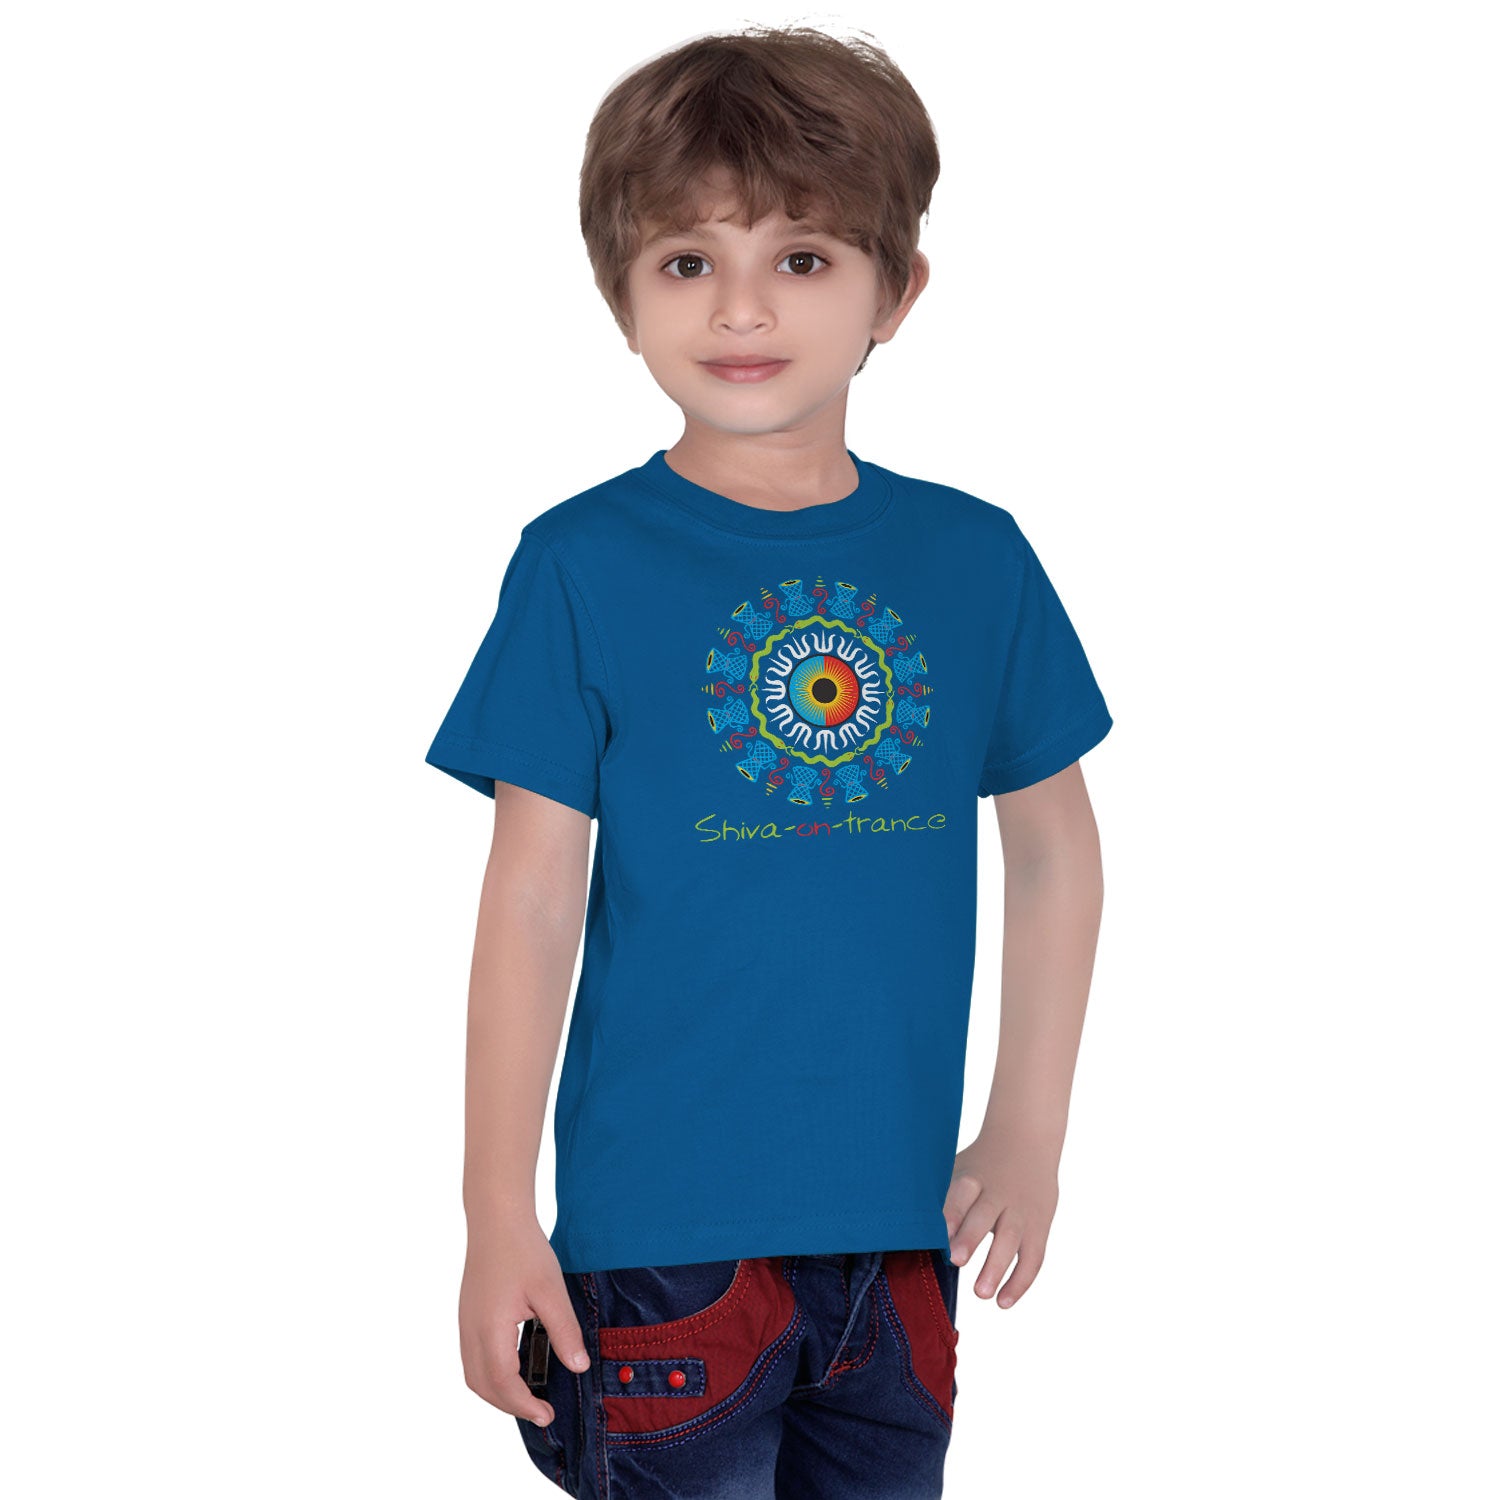 Shiva on Kids Print Daphne T-Shirt – Tantra Tshirts